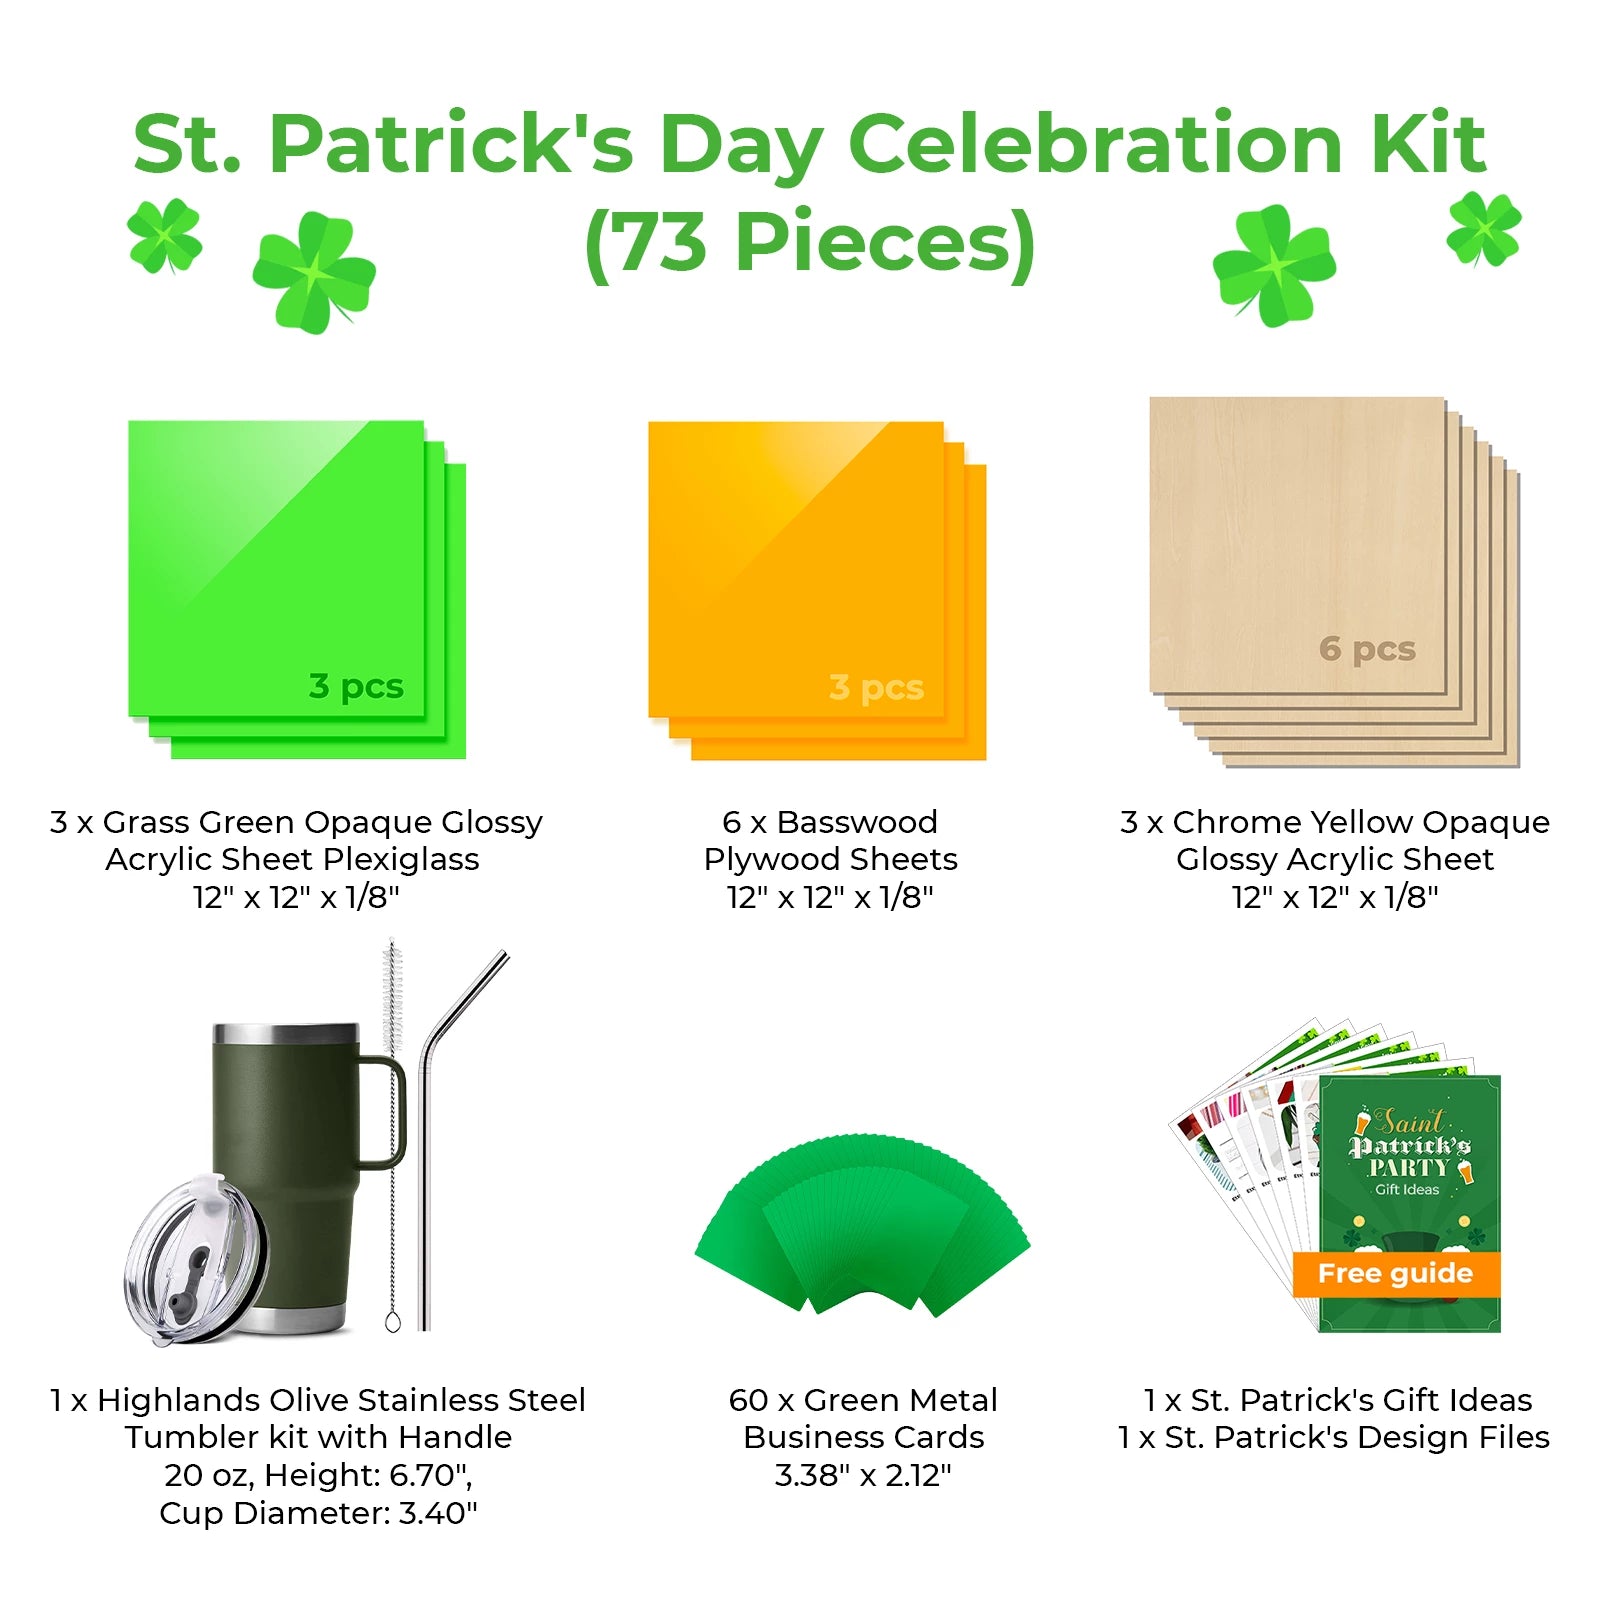 St. Patrick's Day Celebration Kit (73 Pieces)